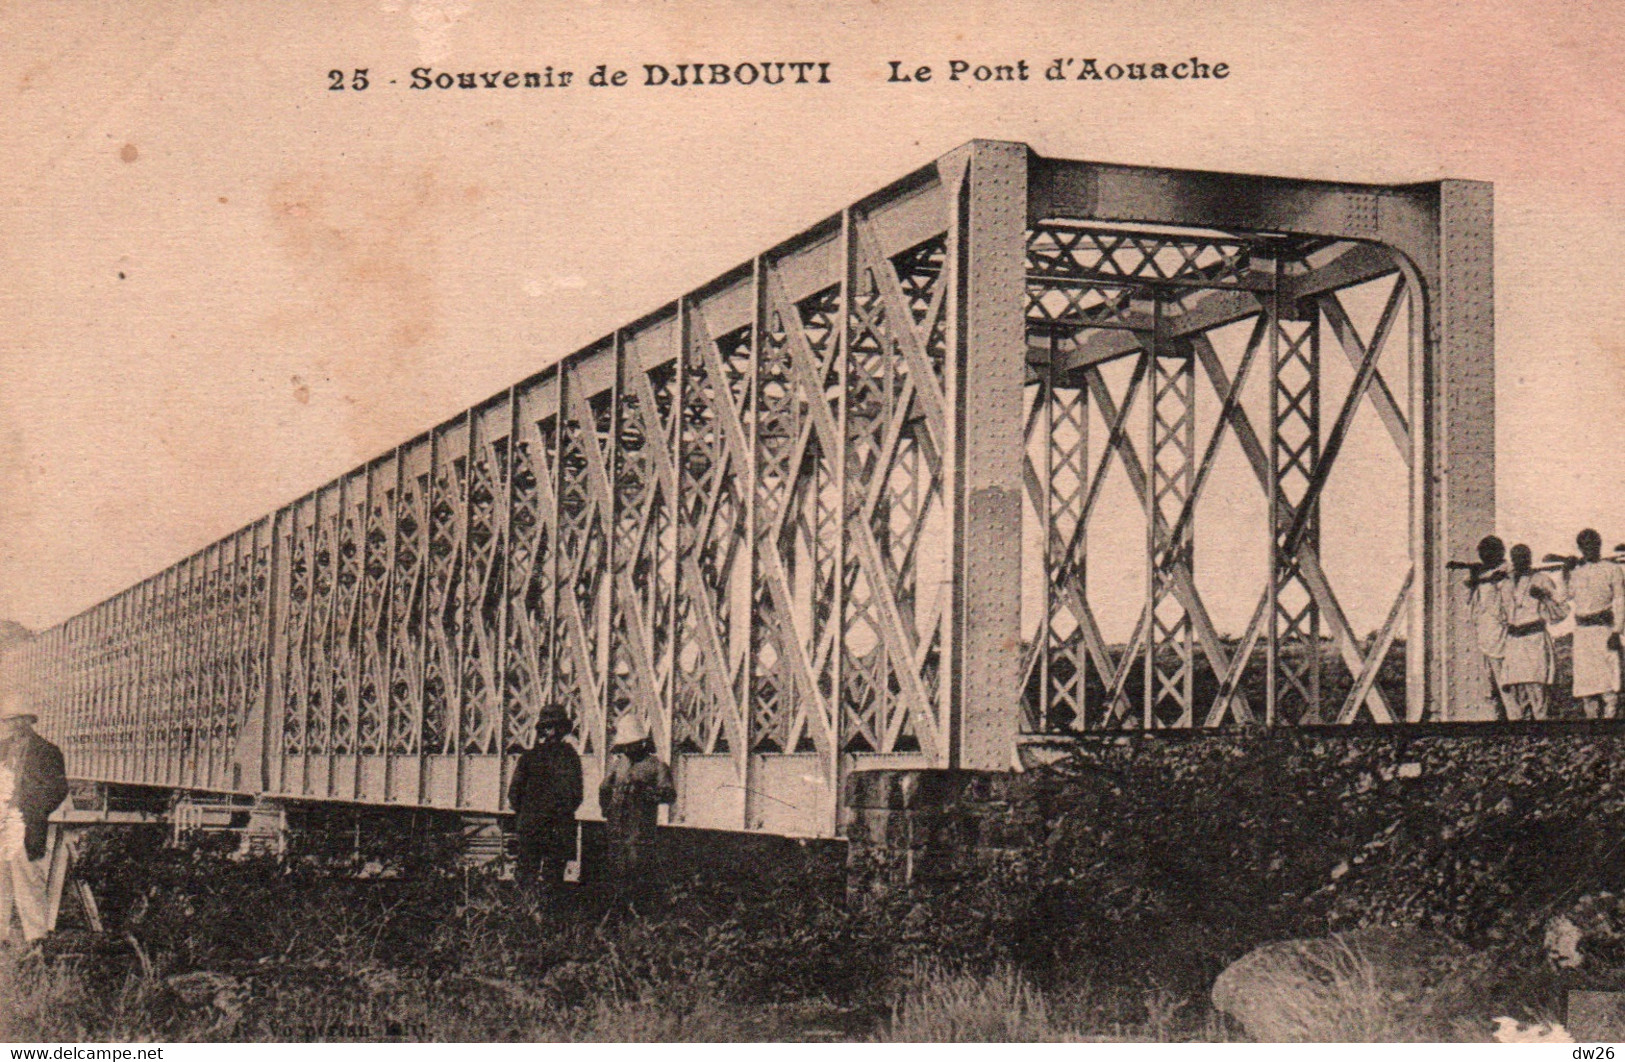 Souvenir De Djibouti - Le Pont D'Aouache - Edition Vorperian - Carte N° 25 Non Circulée - Dschibuti